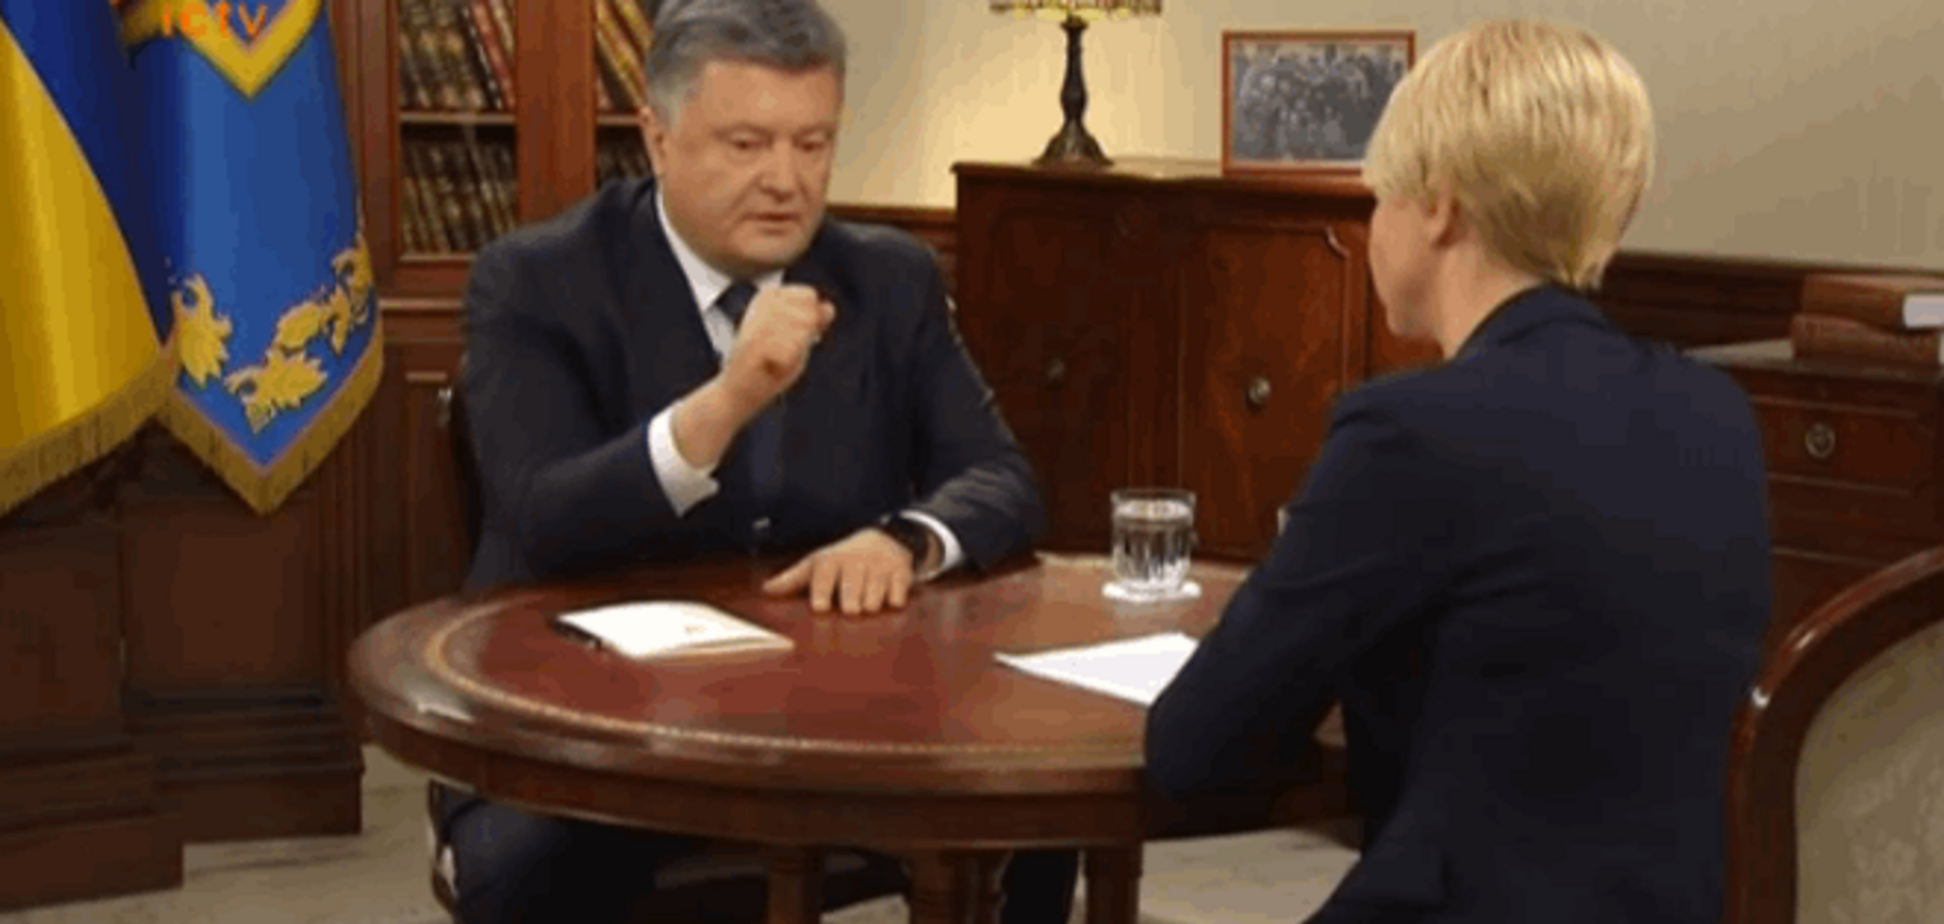 Порошенко: Україна запустила конституційний процес, випереджаючи графік